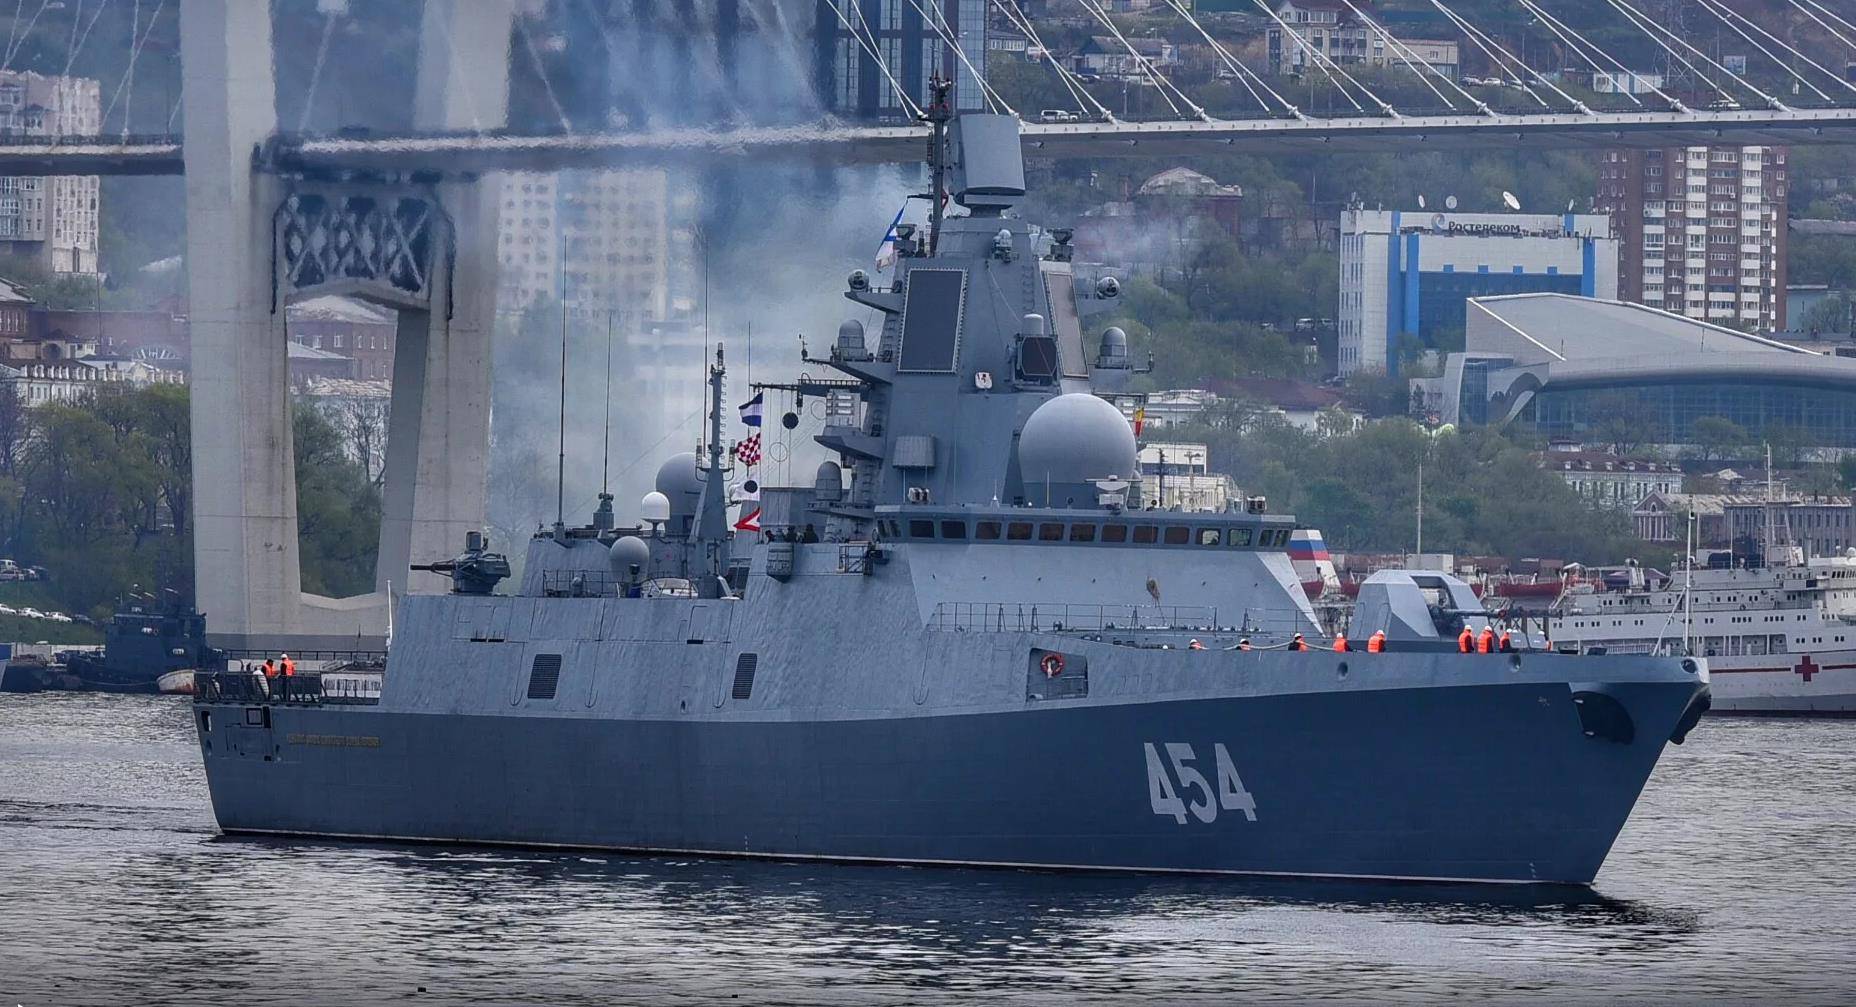 原创俄海军22350型护卫舰搭载大量攻击性武器凸显俄现实无奈